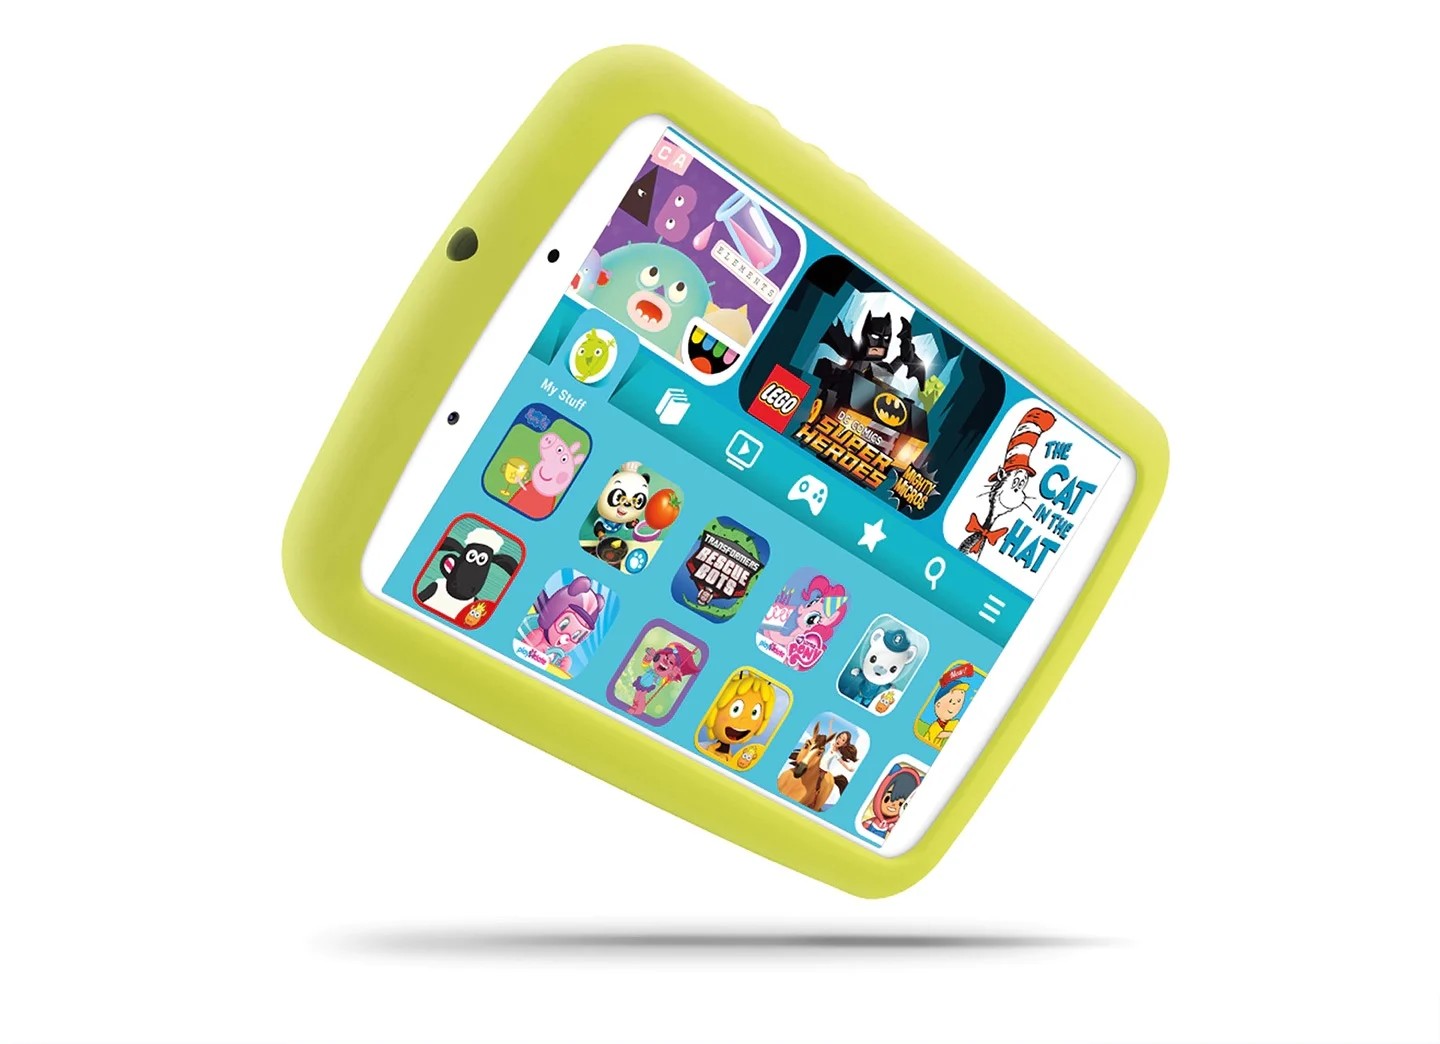 Galaxy Tab A 8.0 Kids Edition